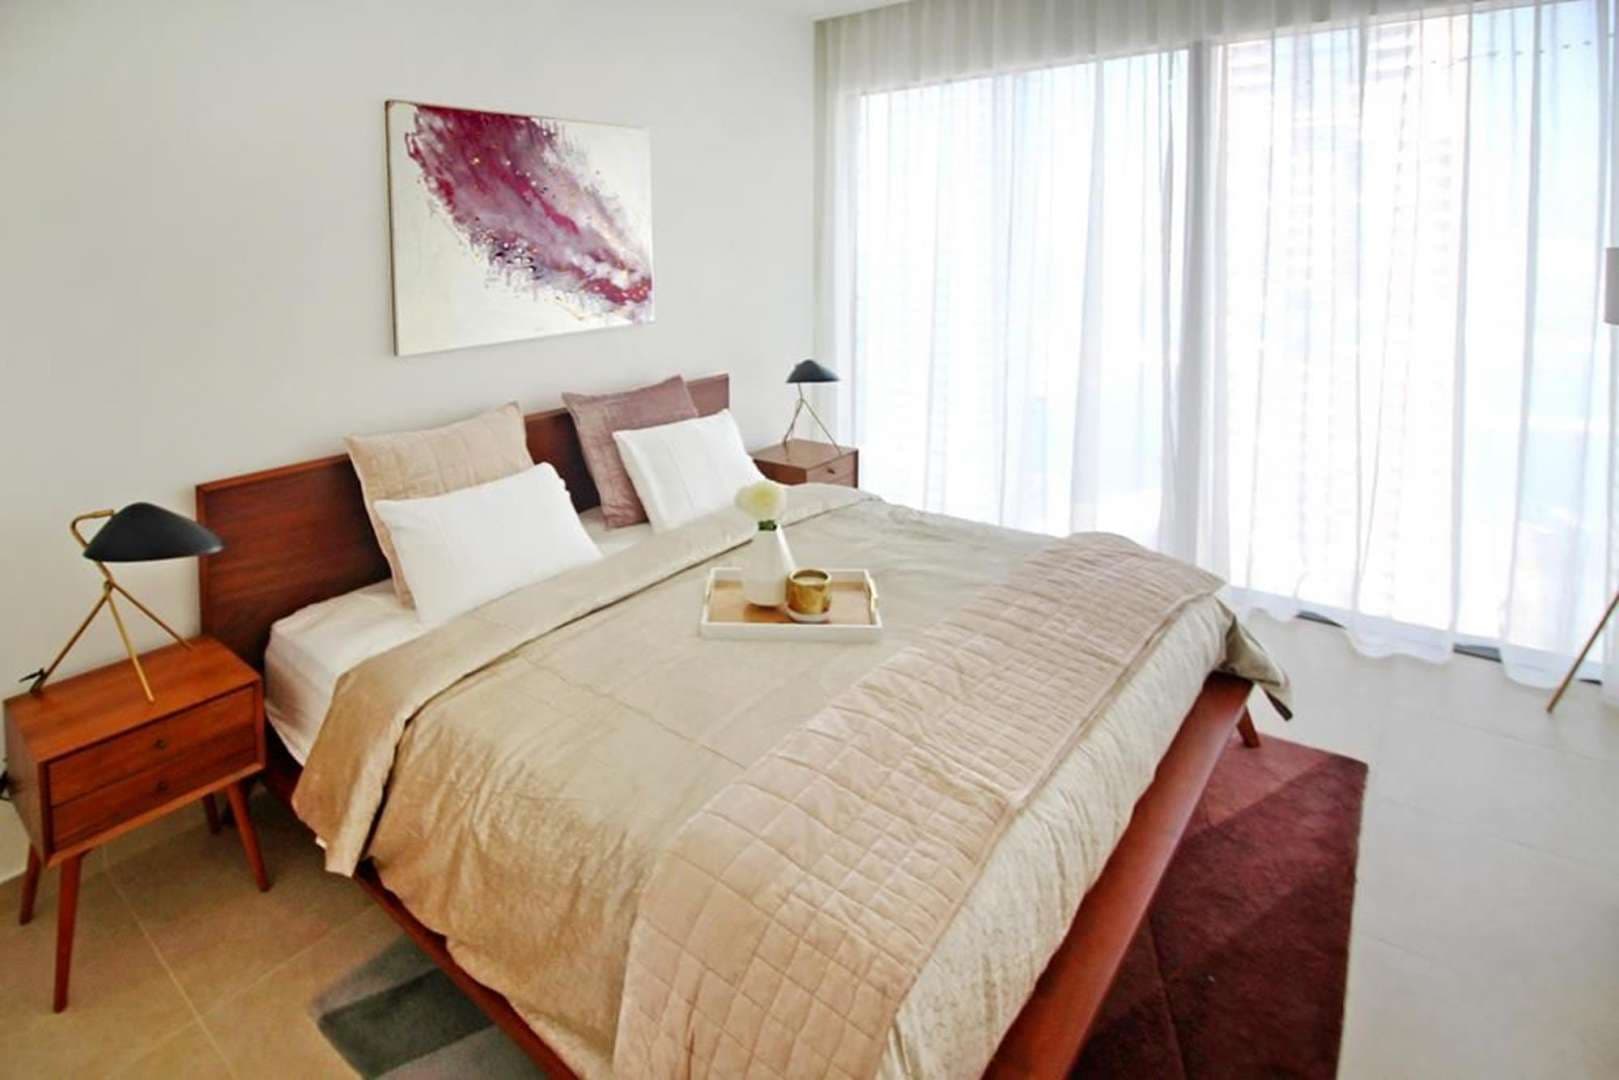 2 Bedroom Apartment For Rent Marina Gate Lp06677 1978bea60d47af00.jpeg